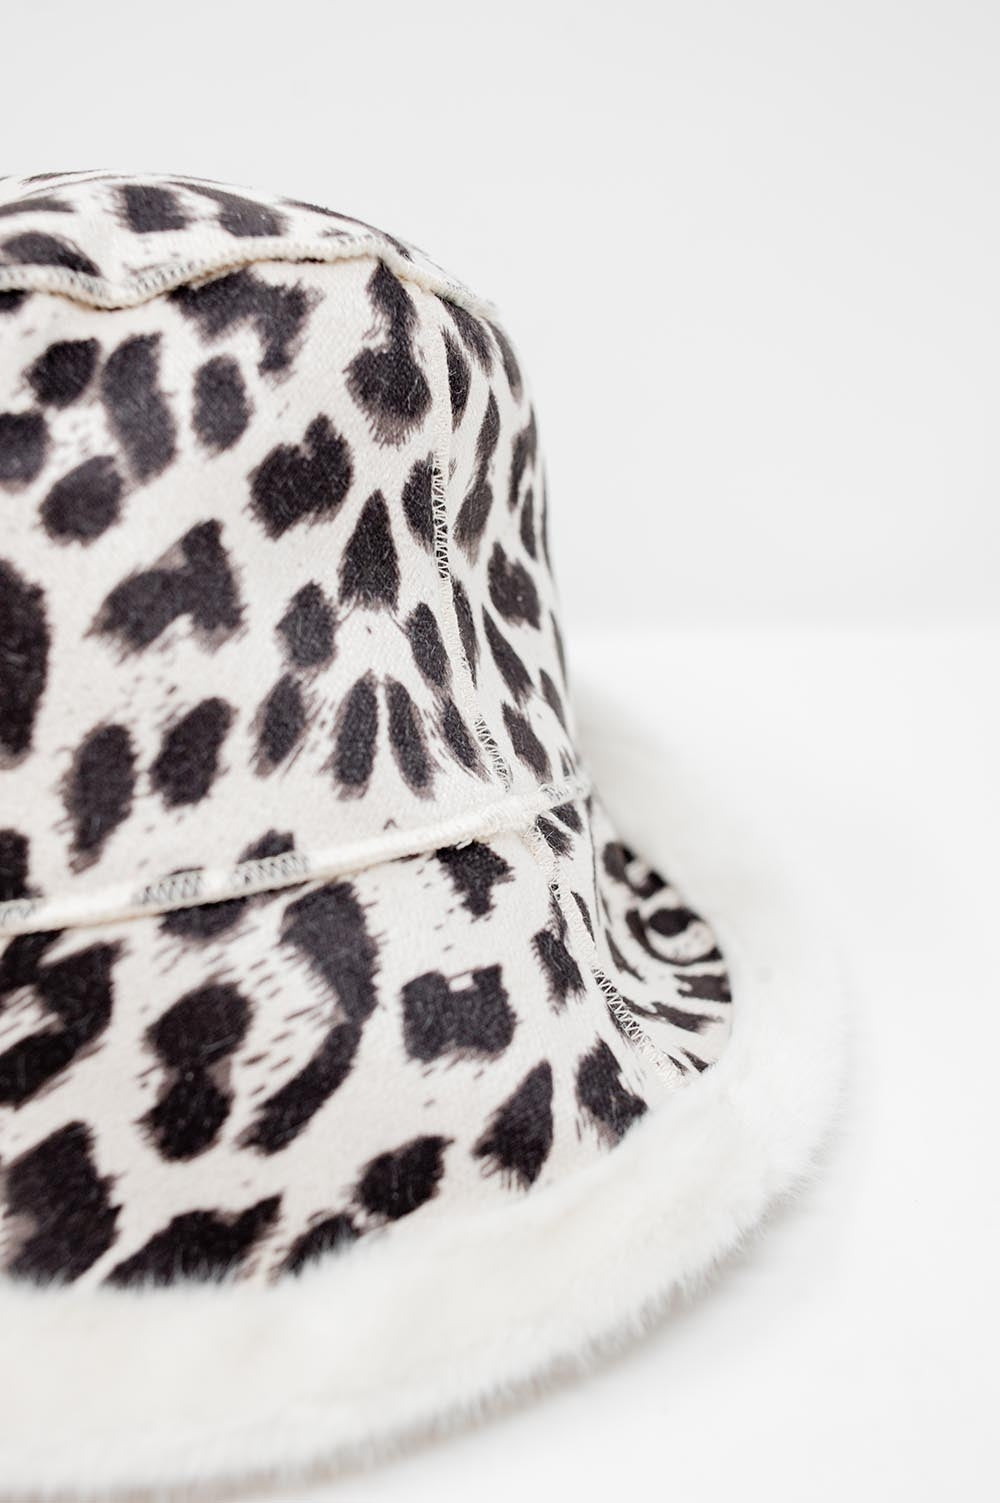 Reversible bucket hat in leopard print in ecru Szua Store